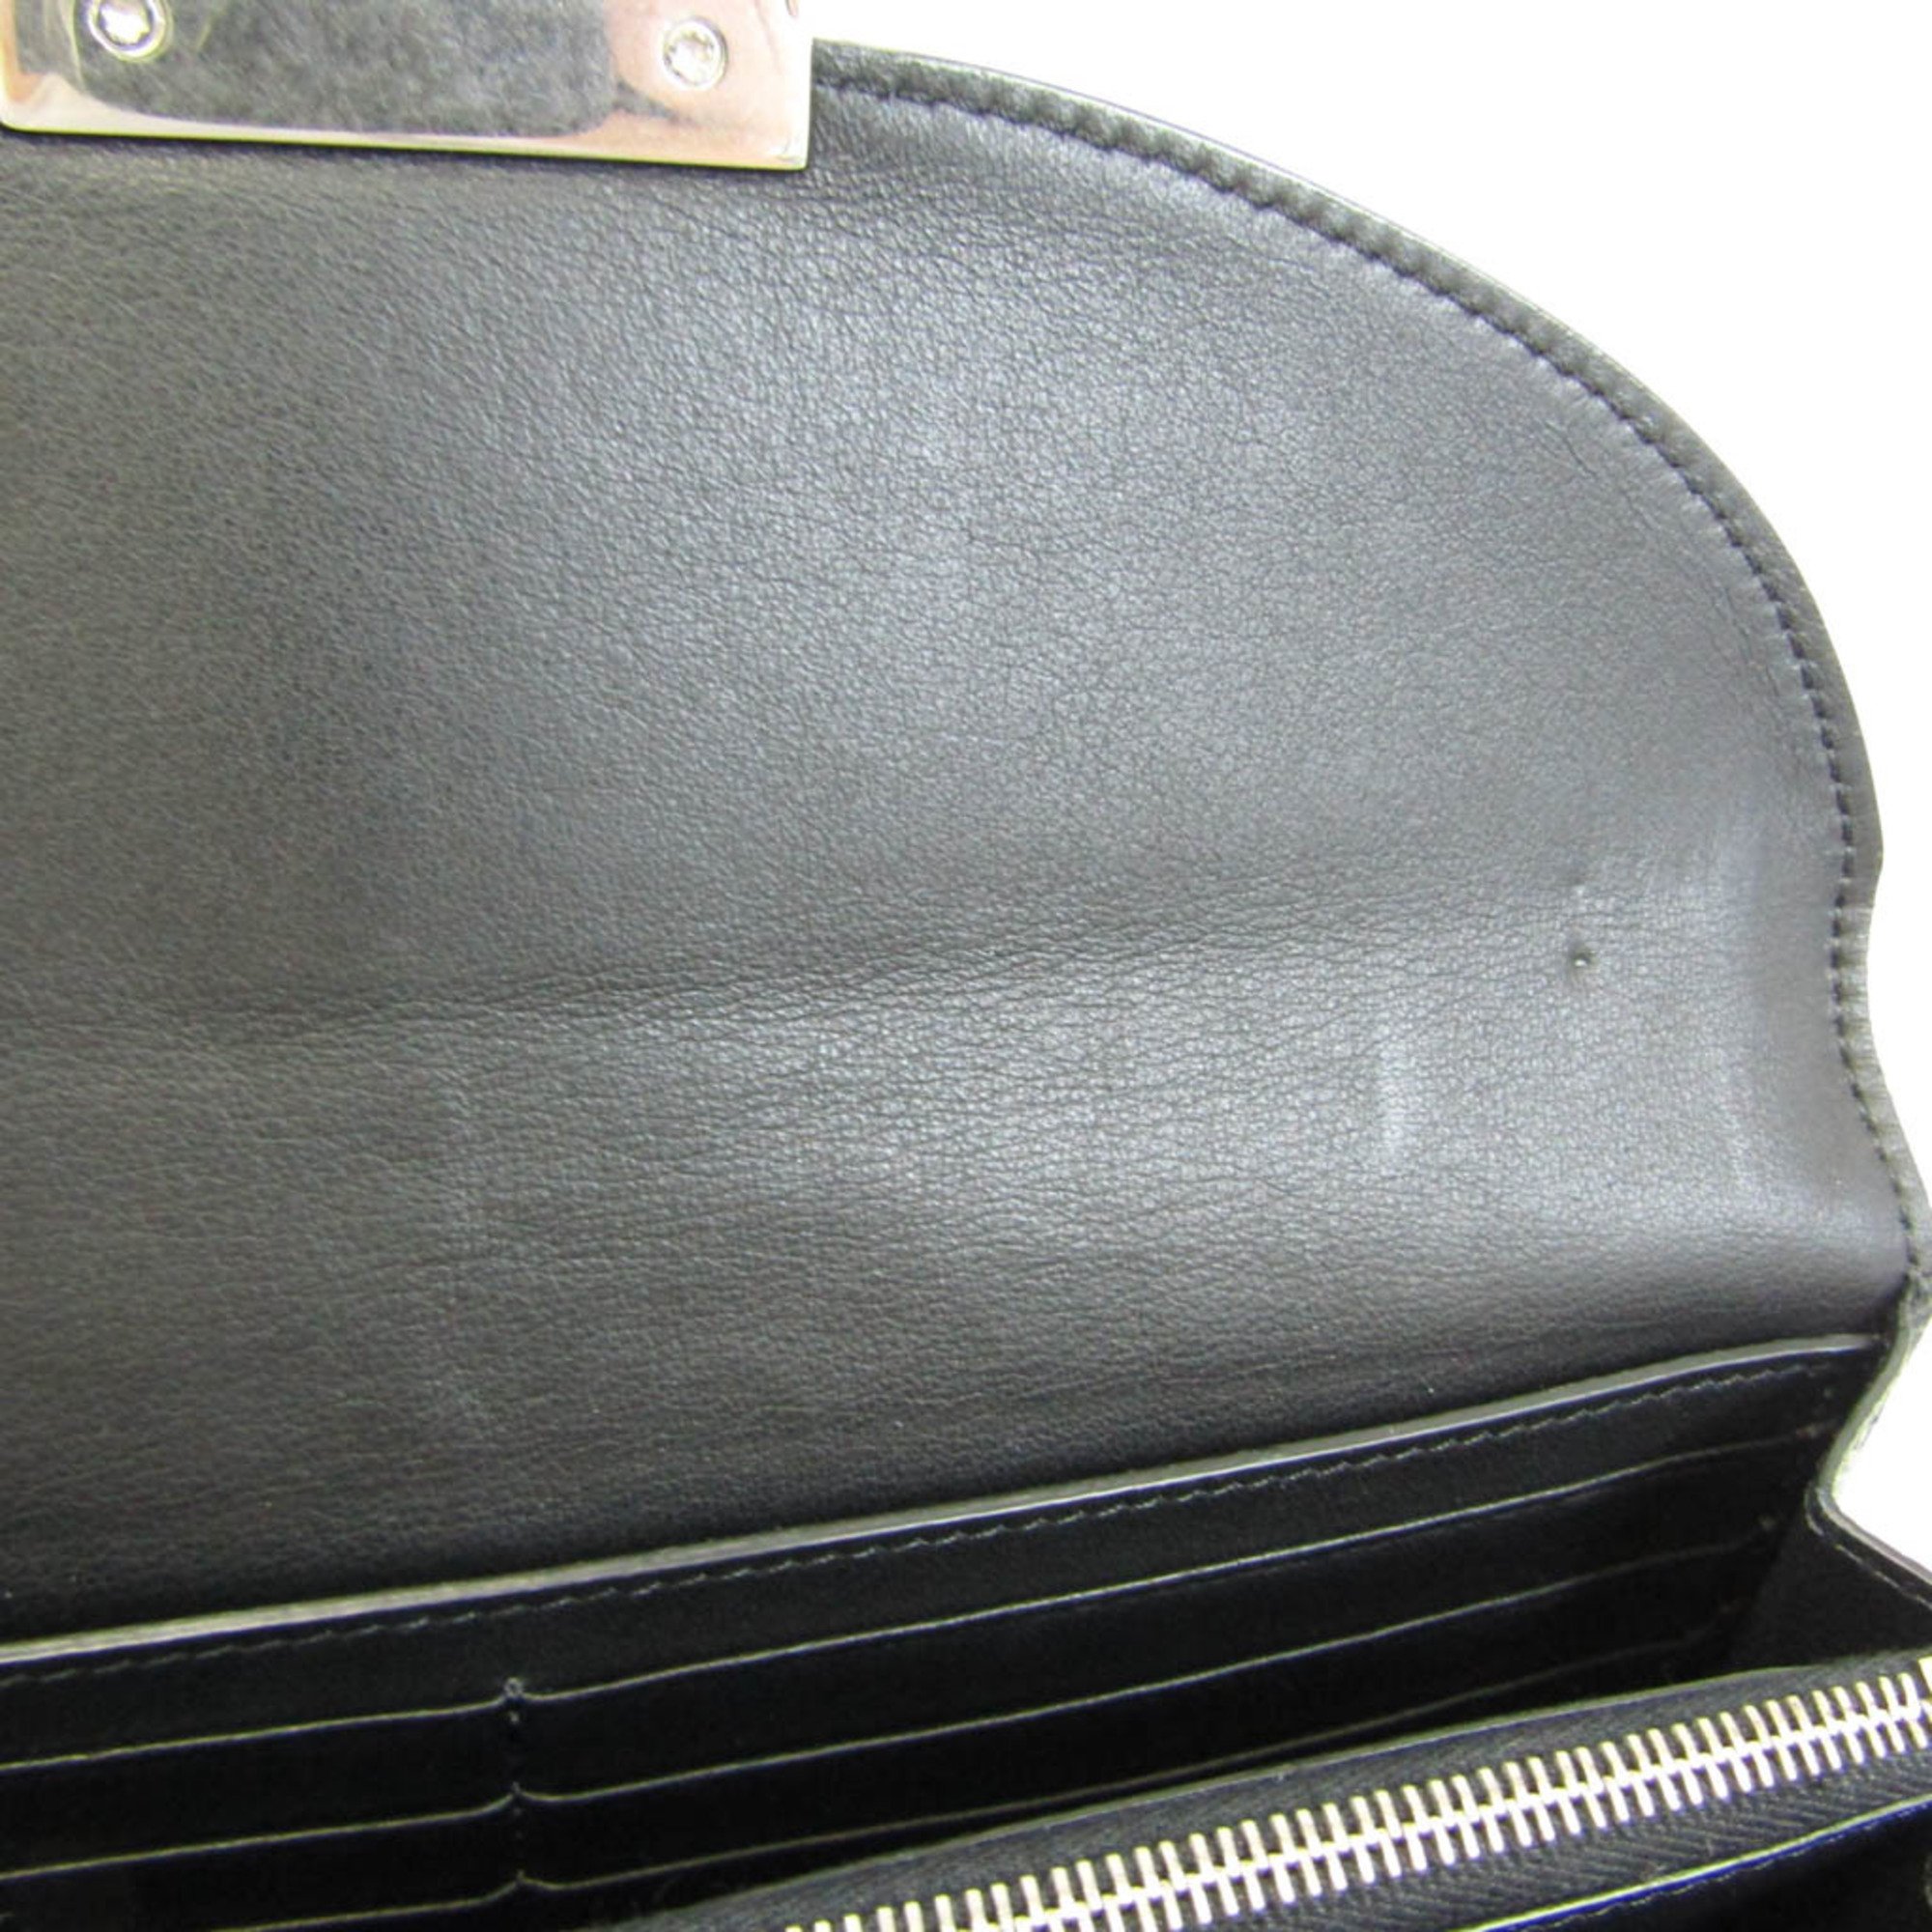 Celine Trotter Large 107853APM Women's  Calfskin Long Wallet (bi-fold) Black